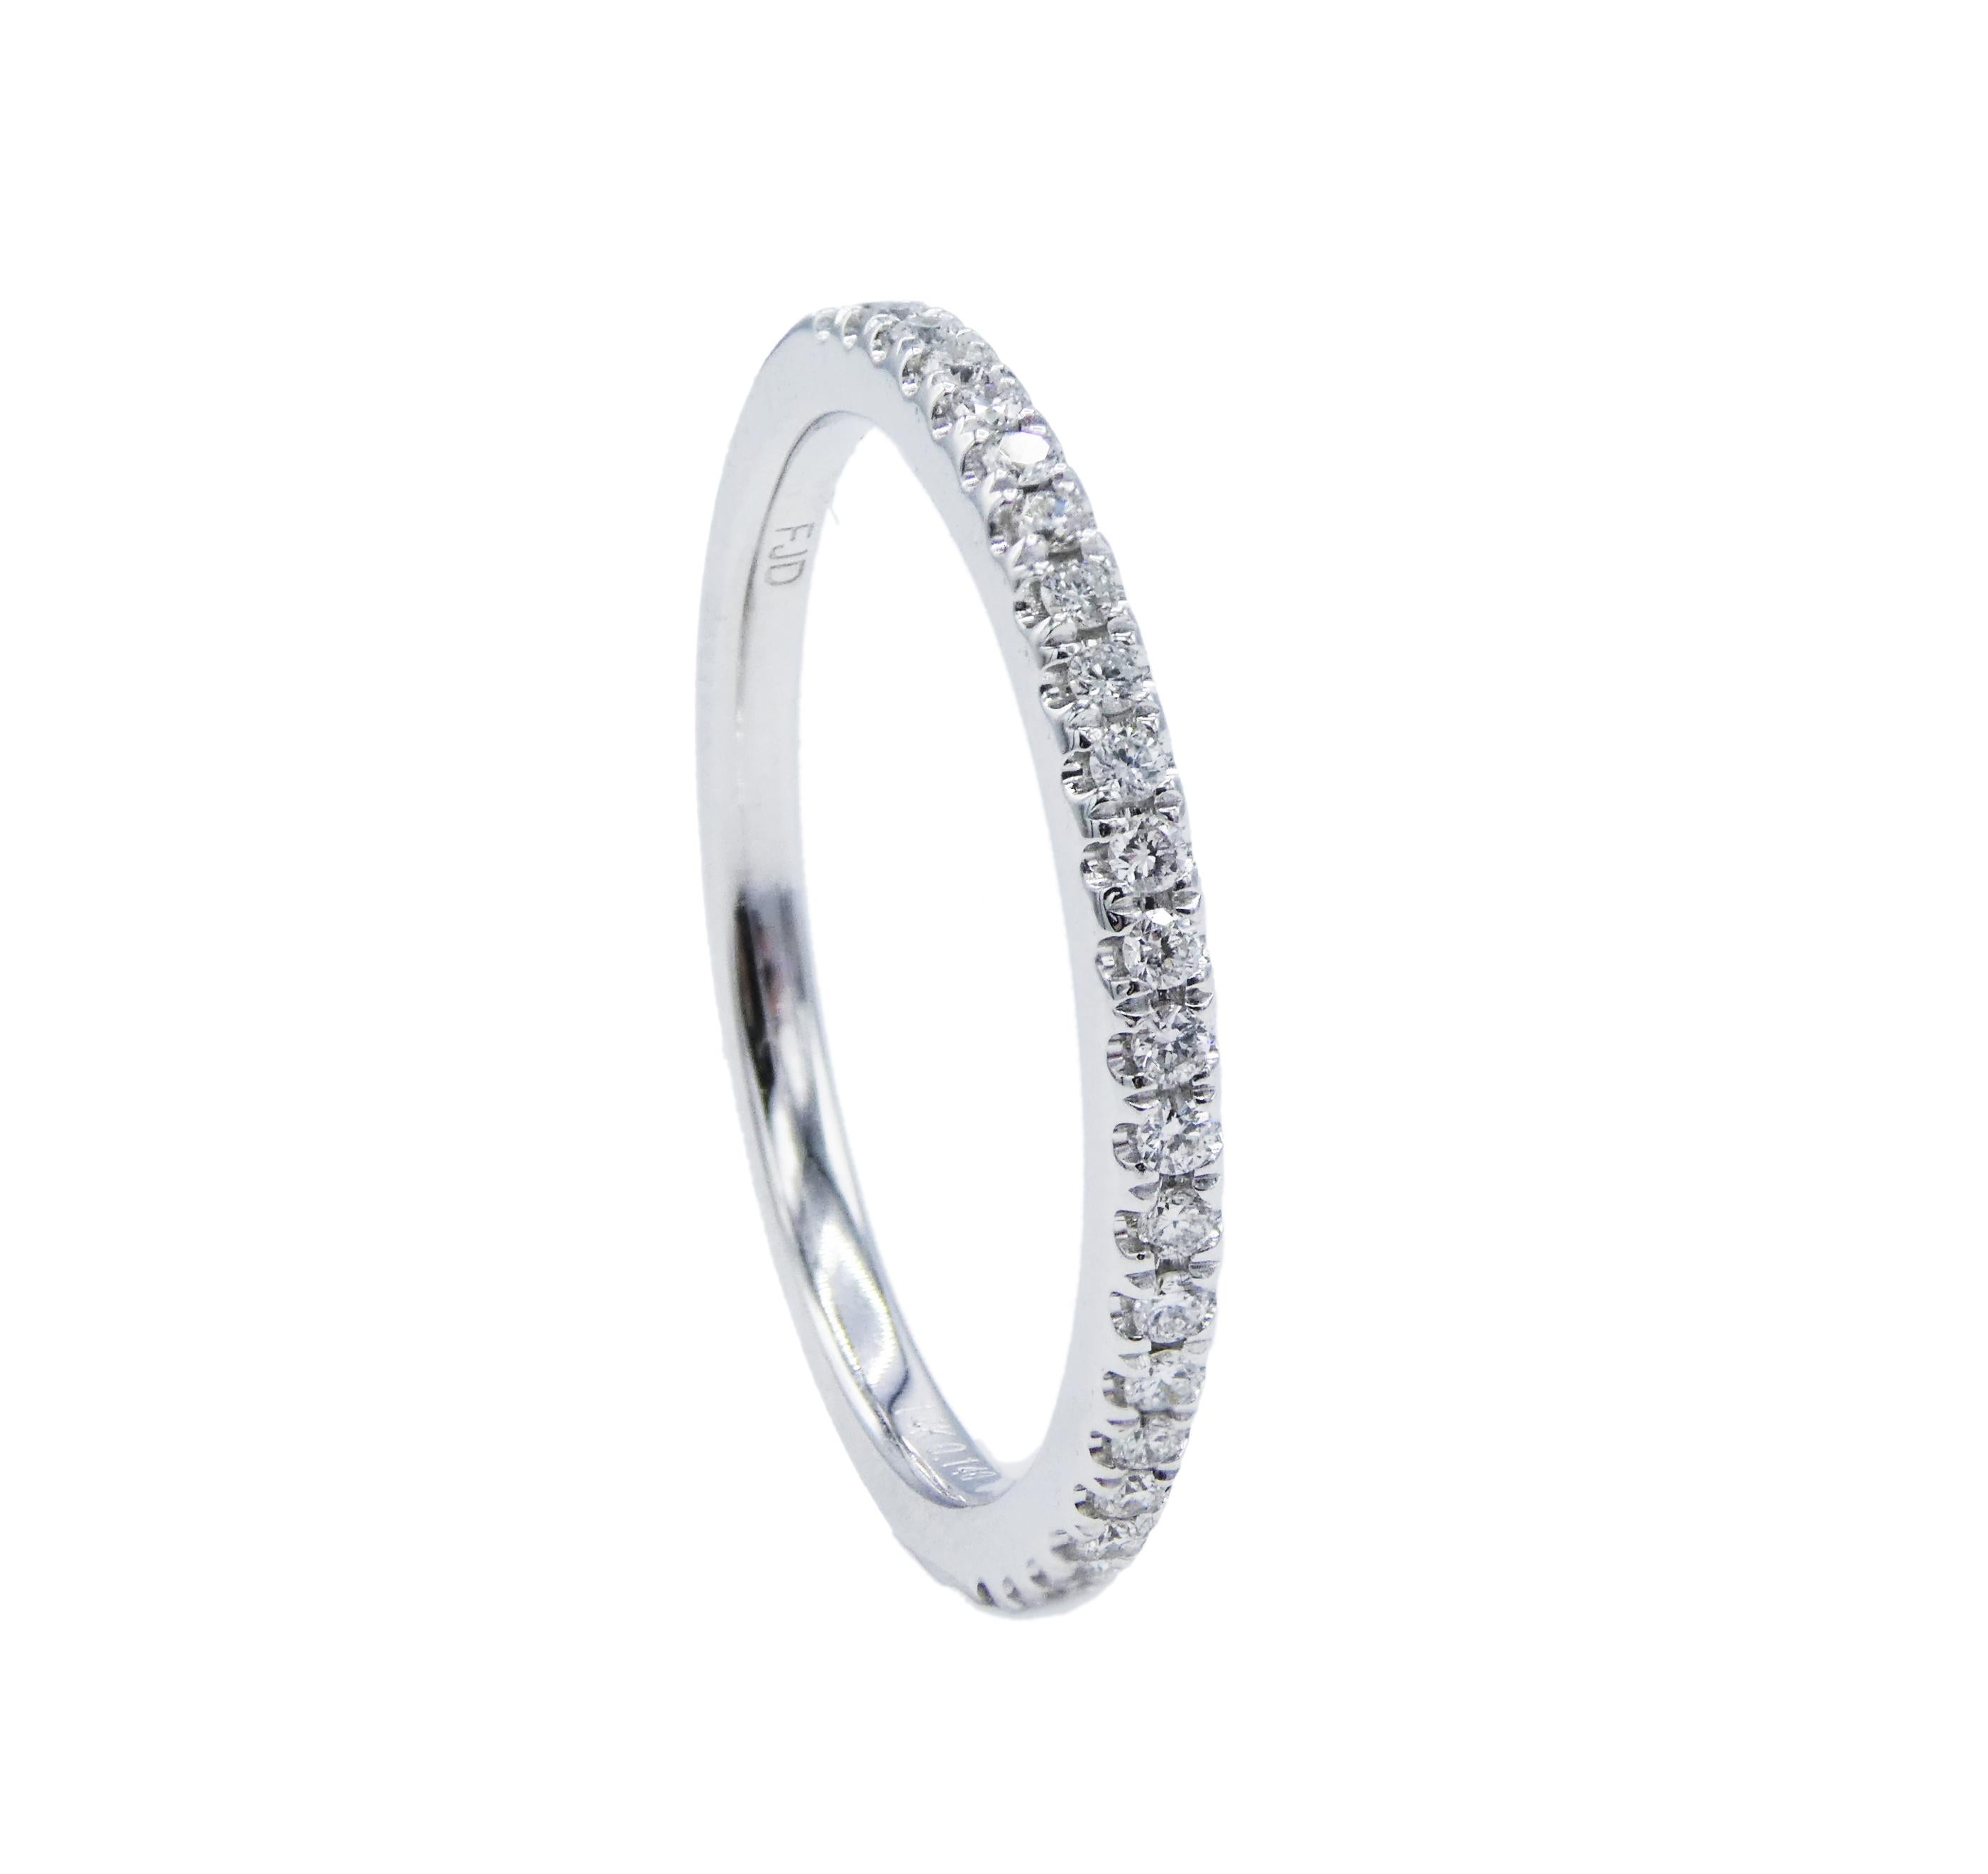 14 Karat White Gold Half Natural Diamond Wedding Band Ring Size 6
Metal: 14k White Gold
Weight: 1.71 grams
Diamonds: 23 round brilliant cut natural diamonds, .14 CTW G VS
Size: 6 (US)
Width: 1.6MM
Stamped: 